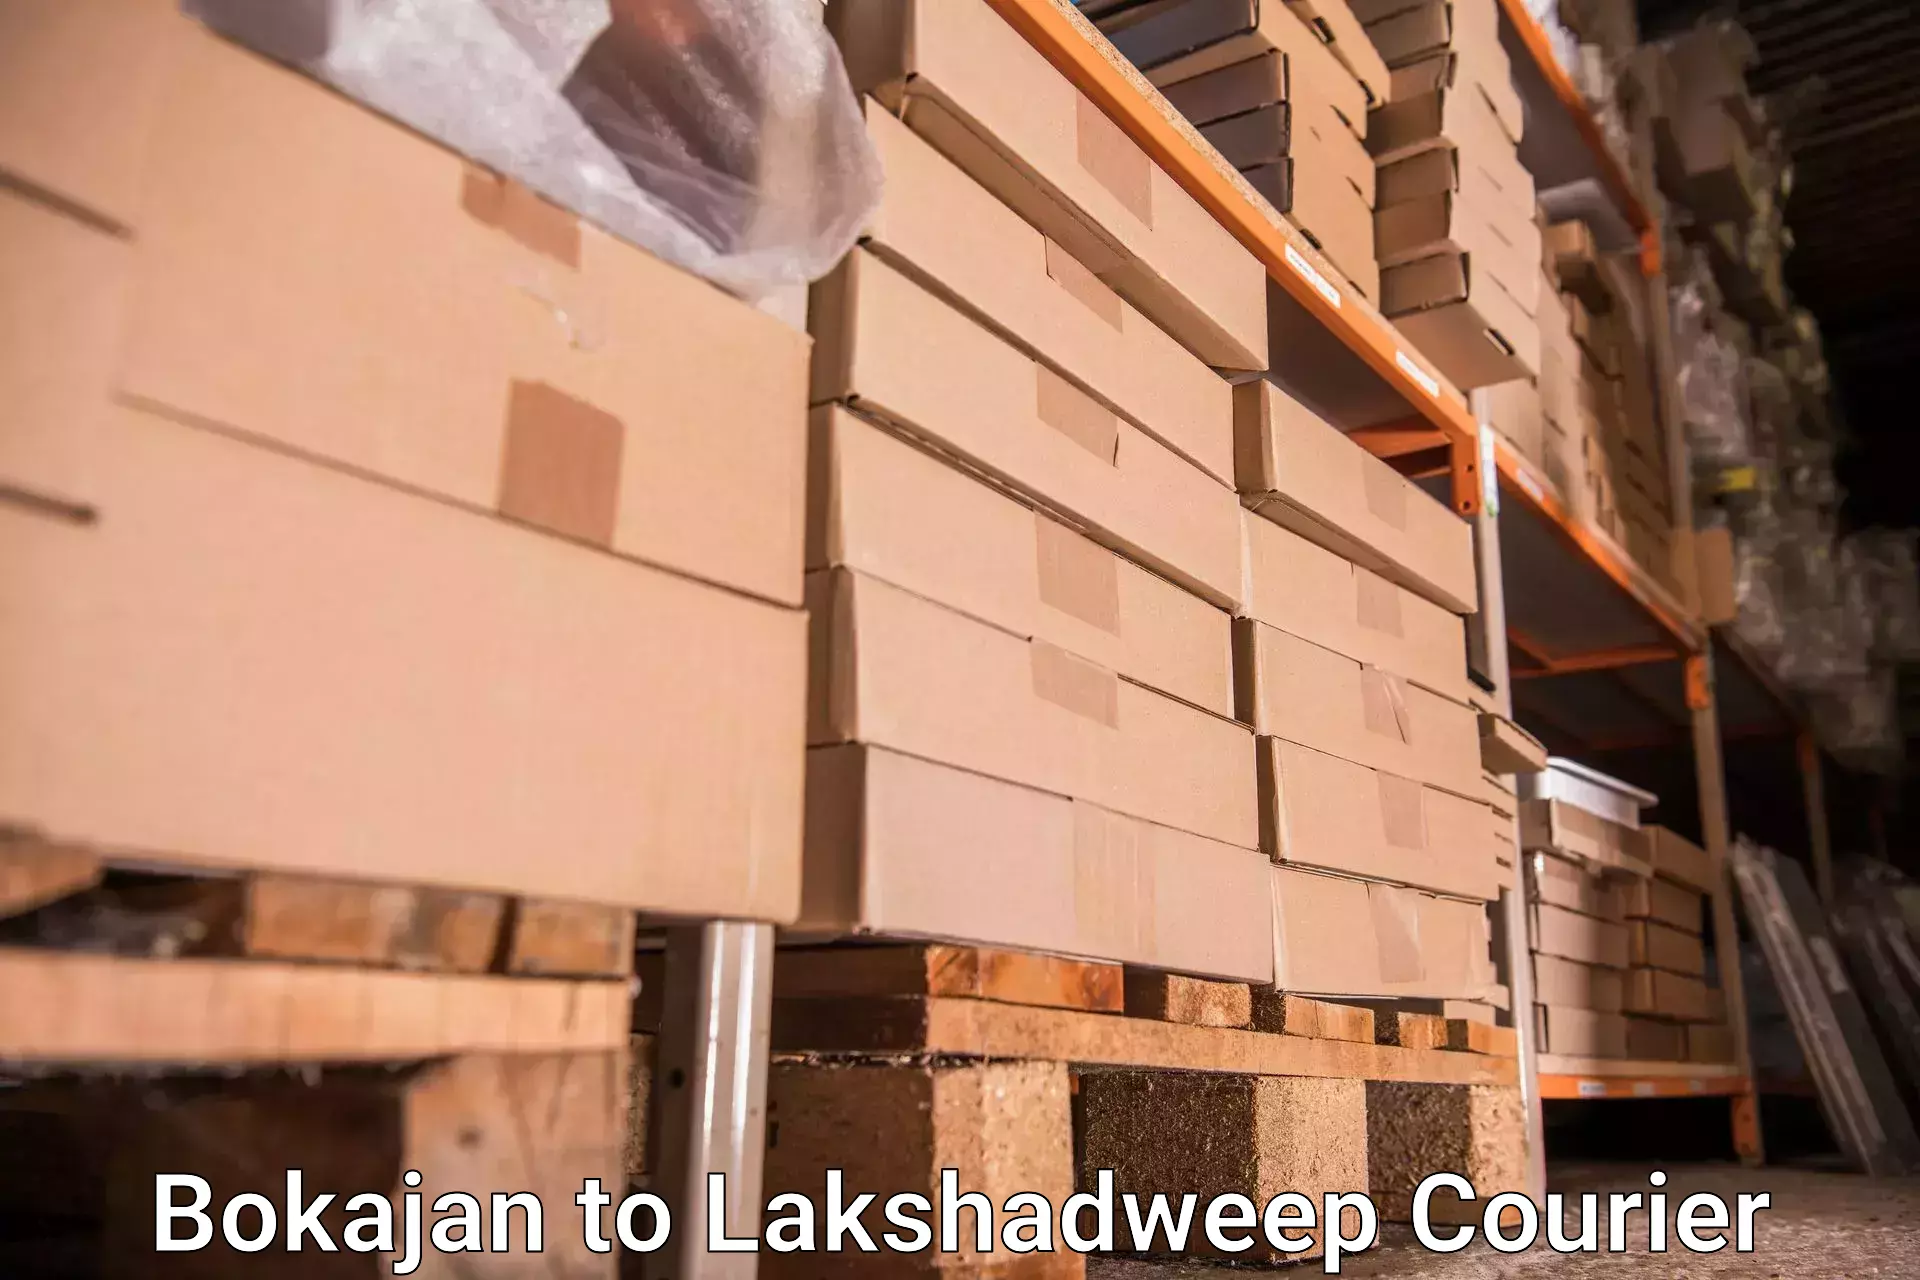 Baggage handling services in Bokajan to Lakshadweep